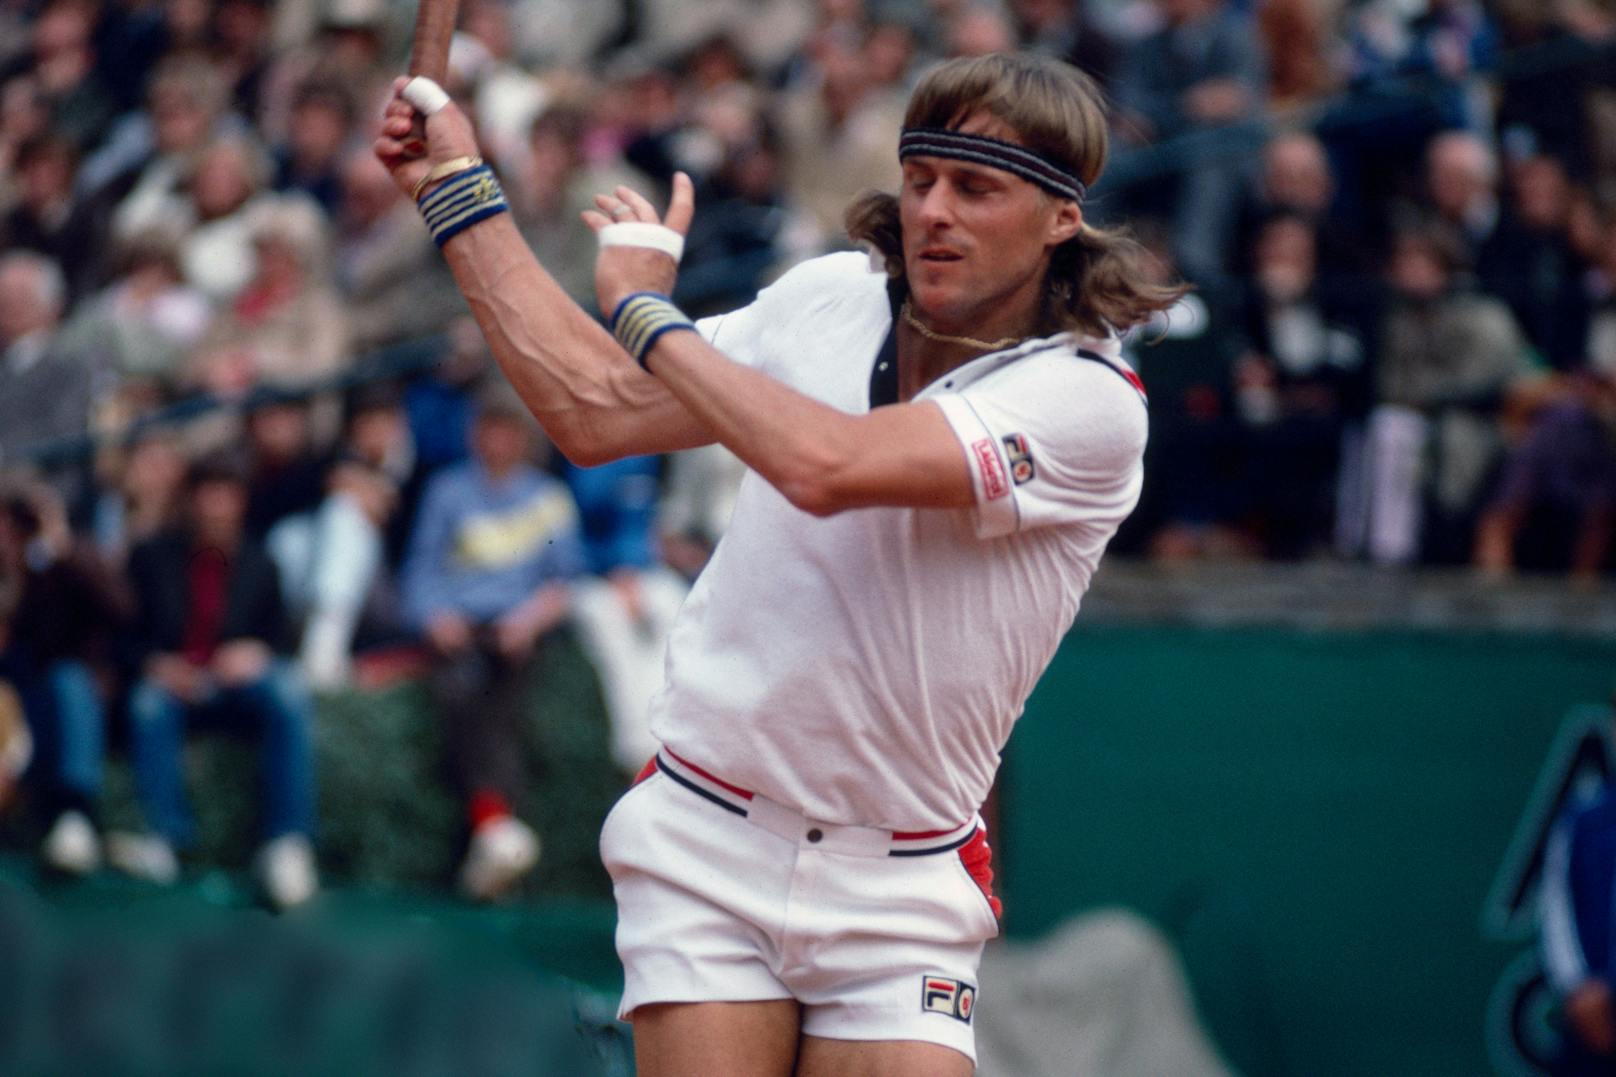 Zum Vergleich: der Schwede Björn Borg war einst die Nummer 1 der Tenniswelt.